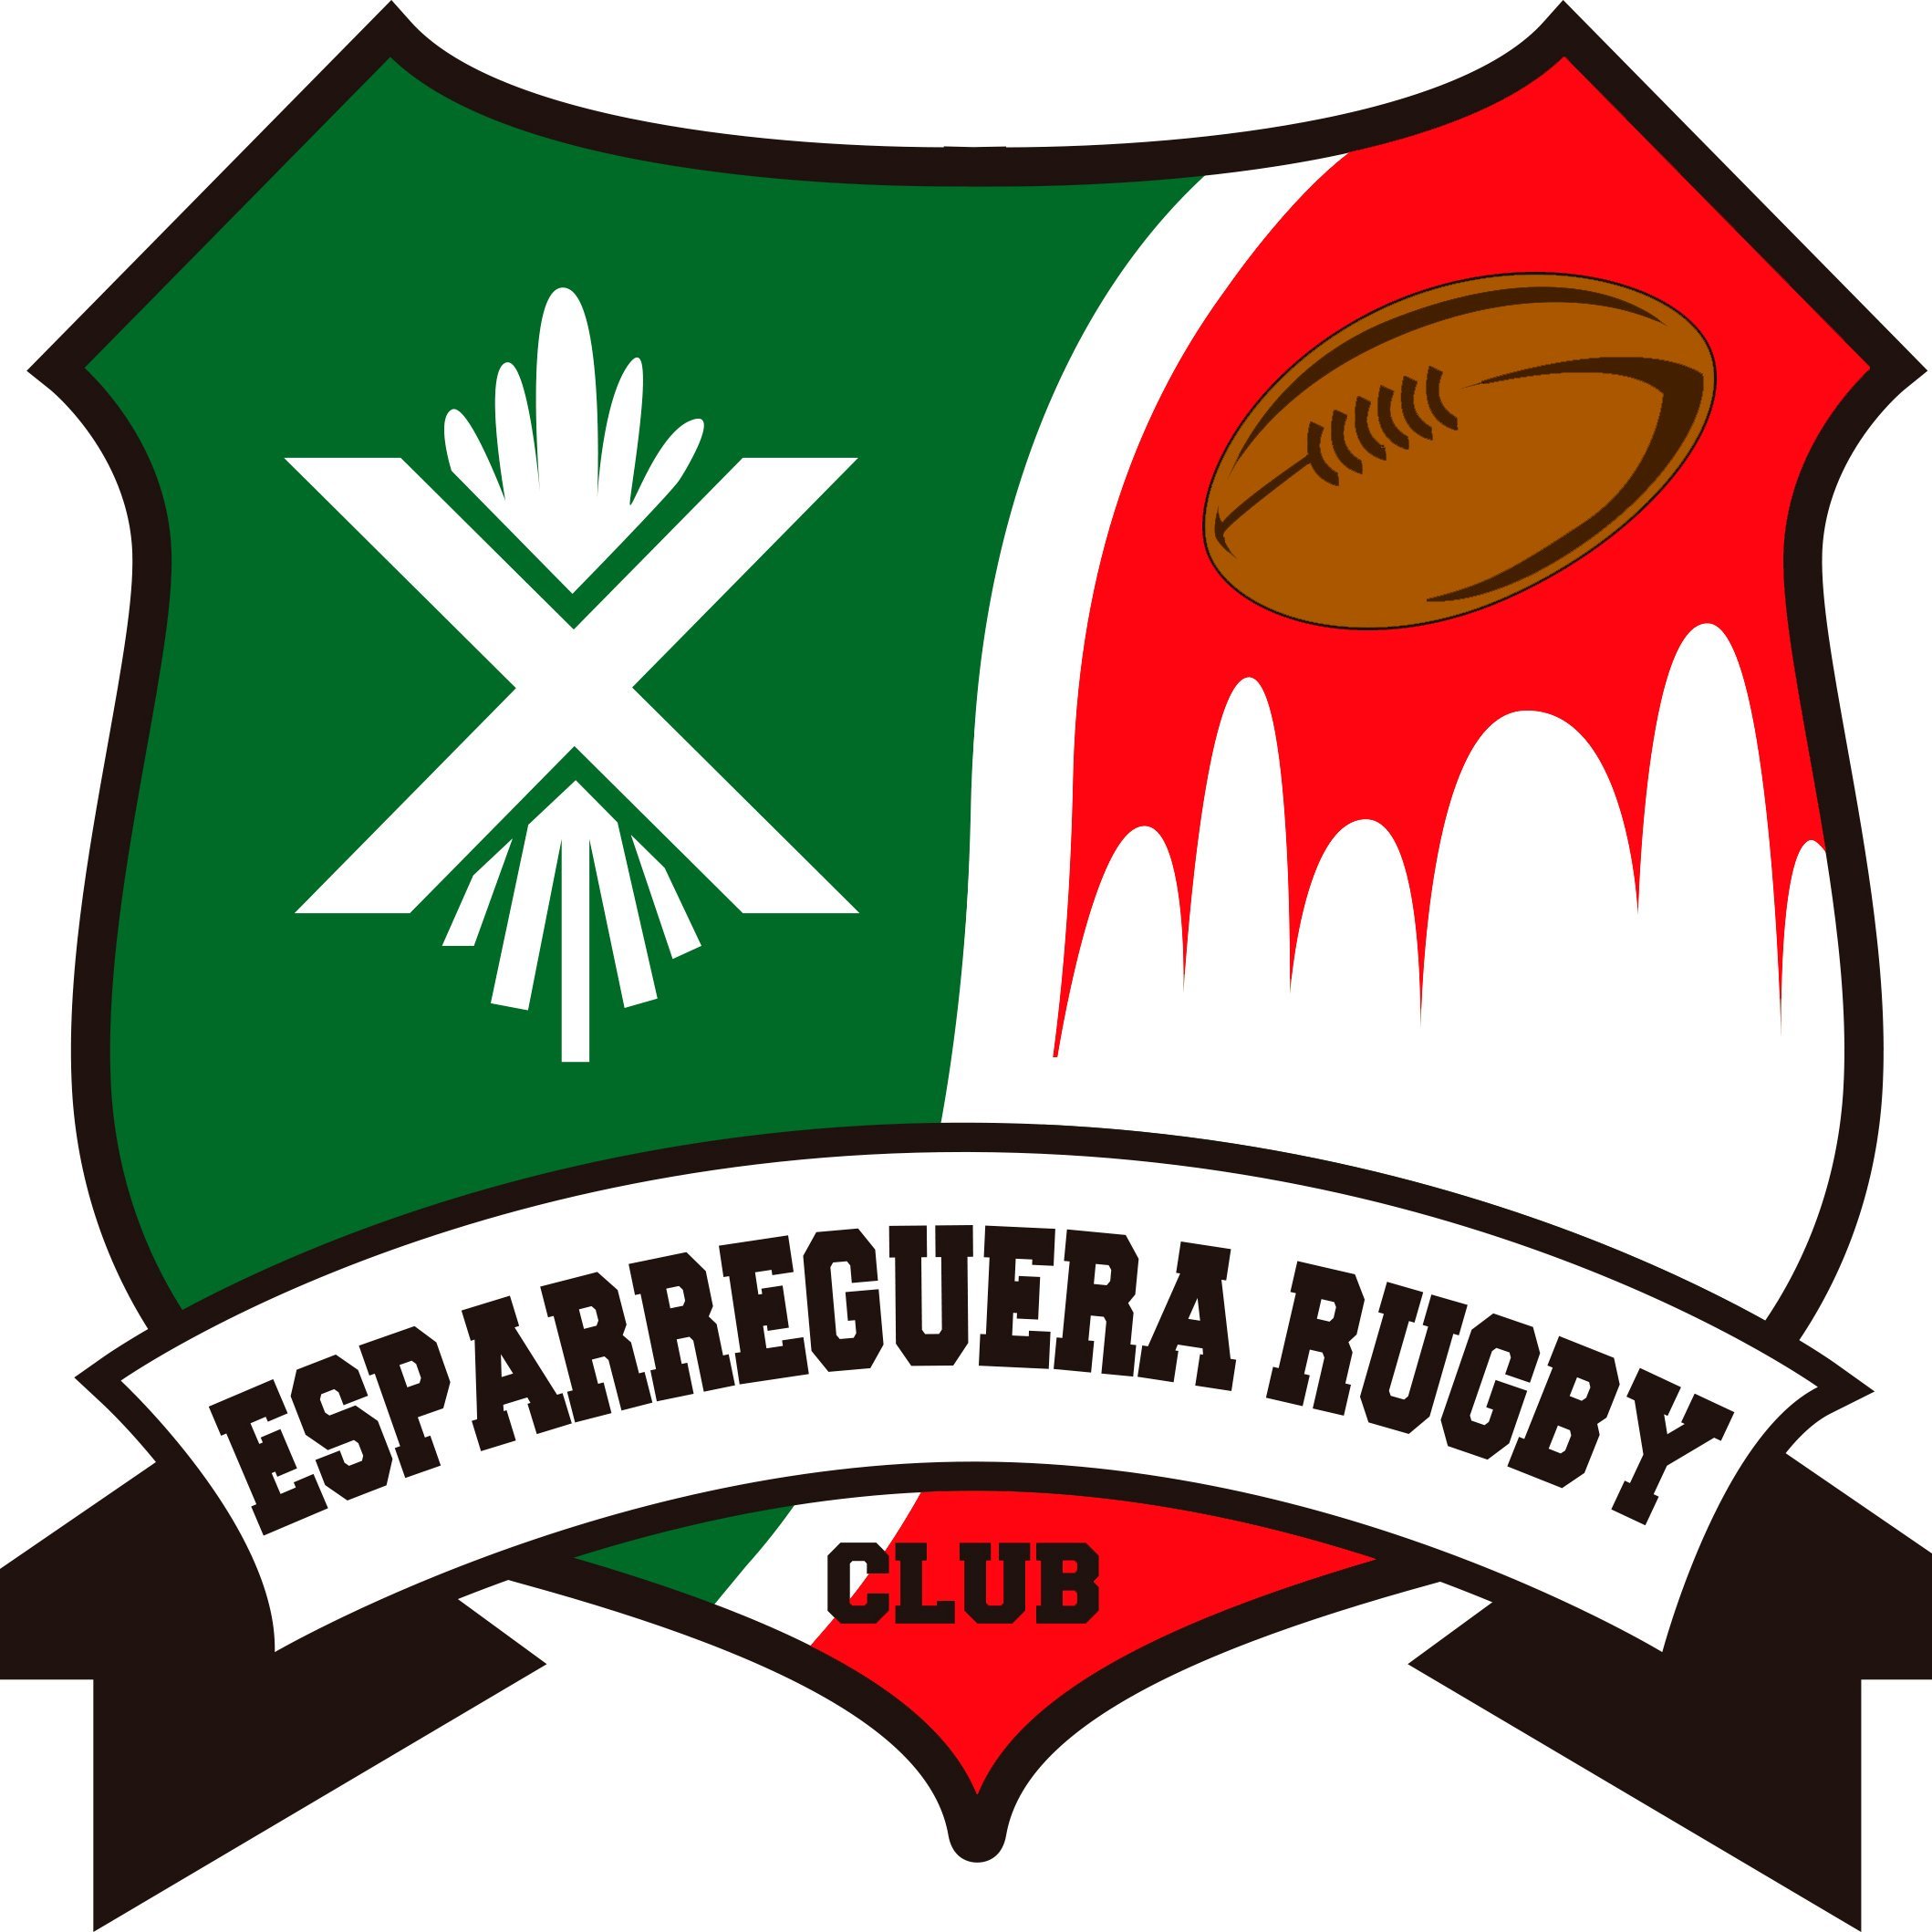 Esparreguera Rugby